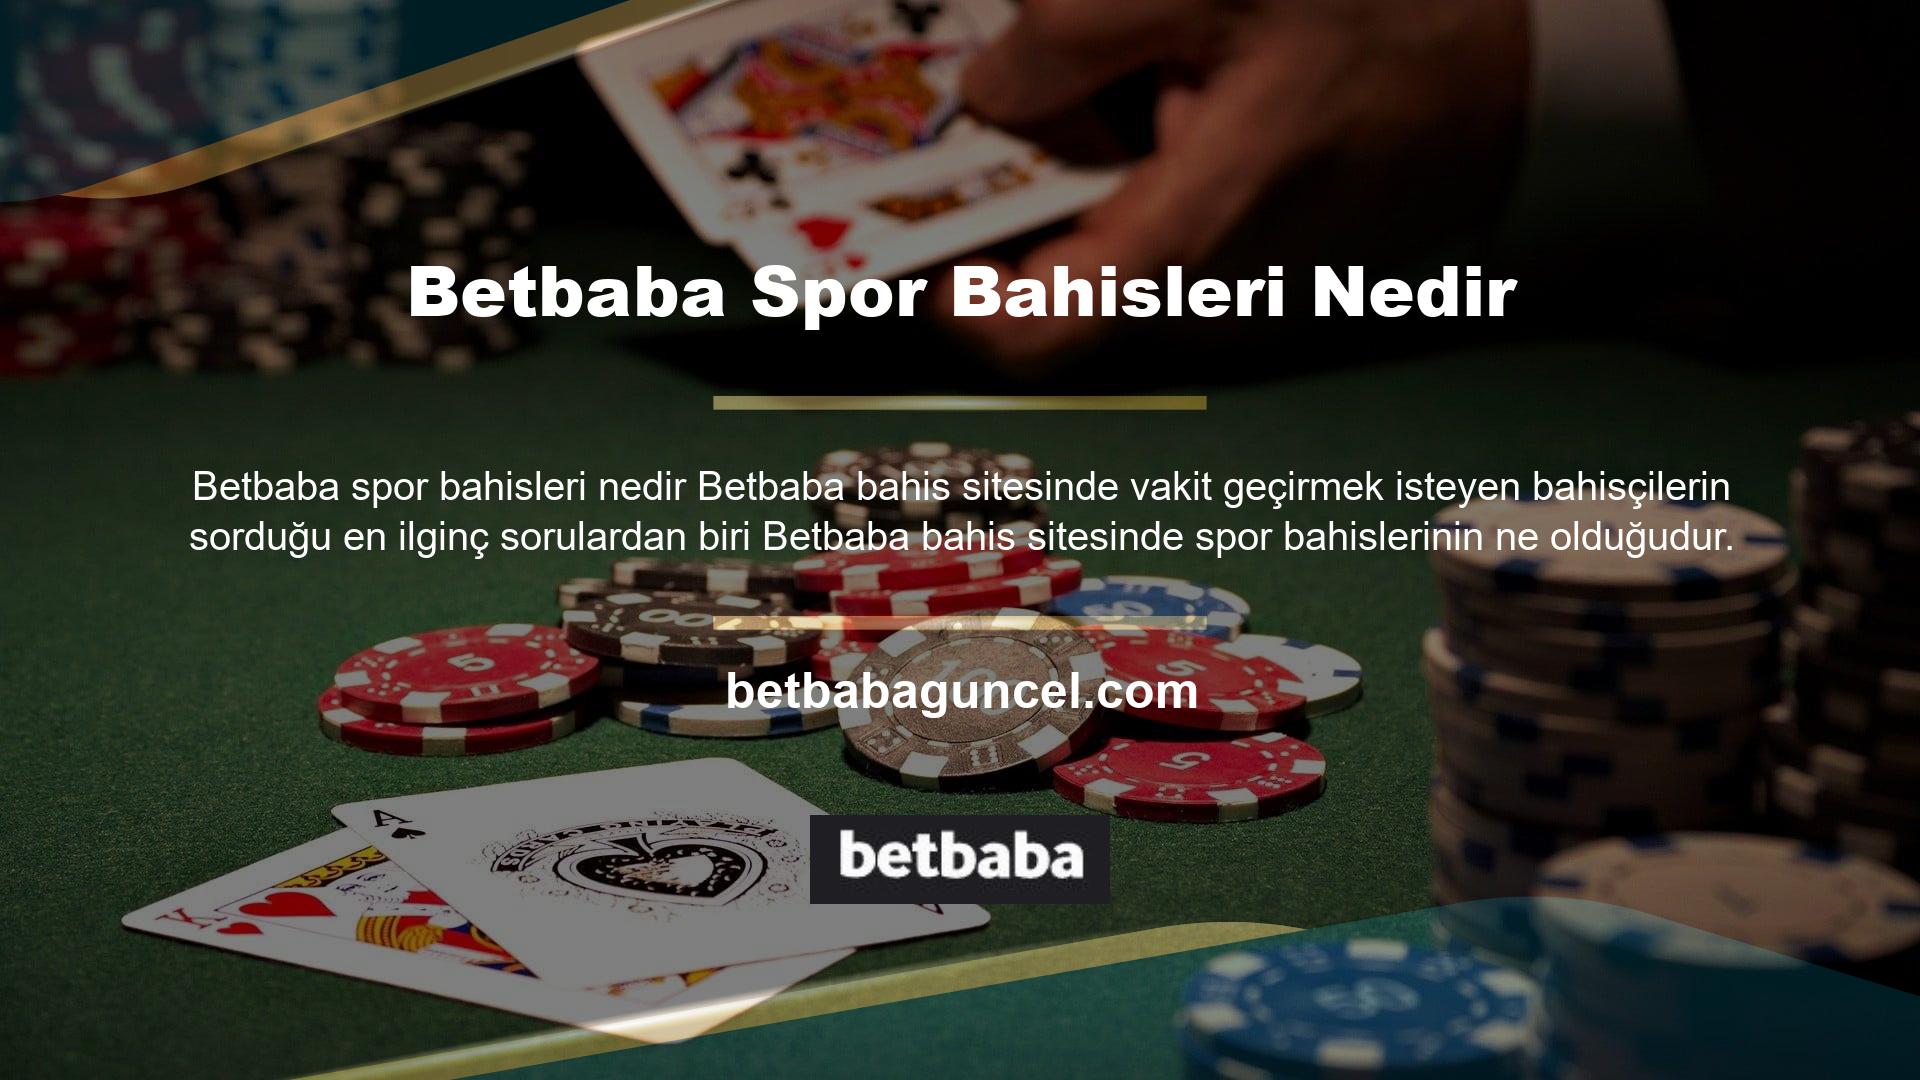 Betbaba bahis sitesi, sitede spor bahisleri hakkında konuşarak casino tutkunlarını bilgilendirdiği söylenebilir